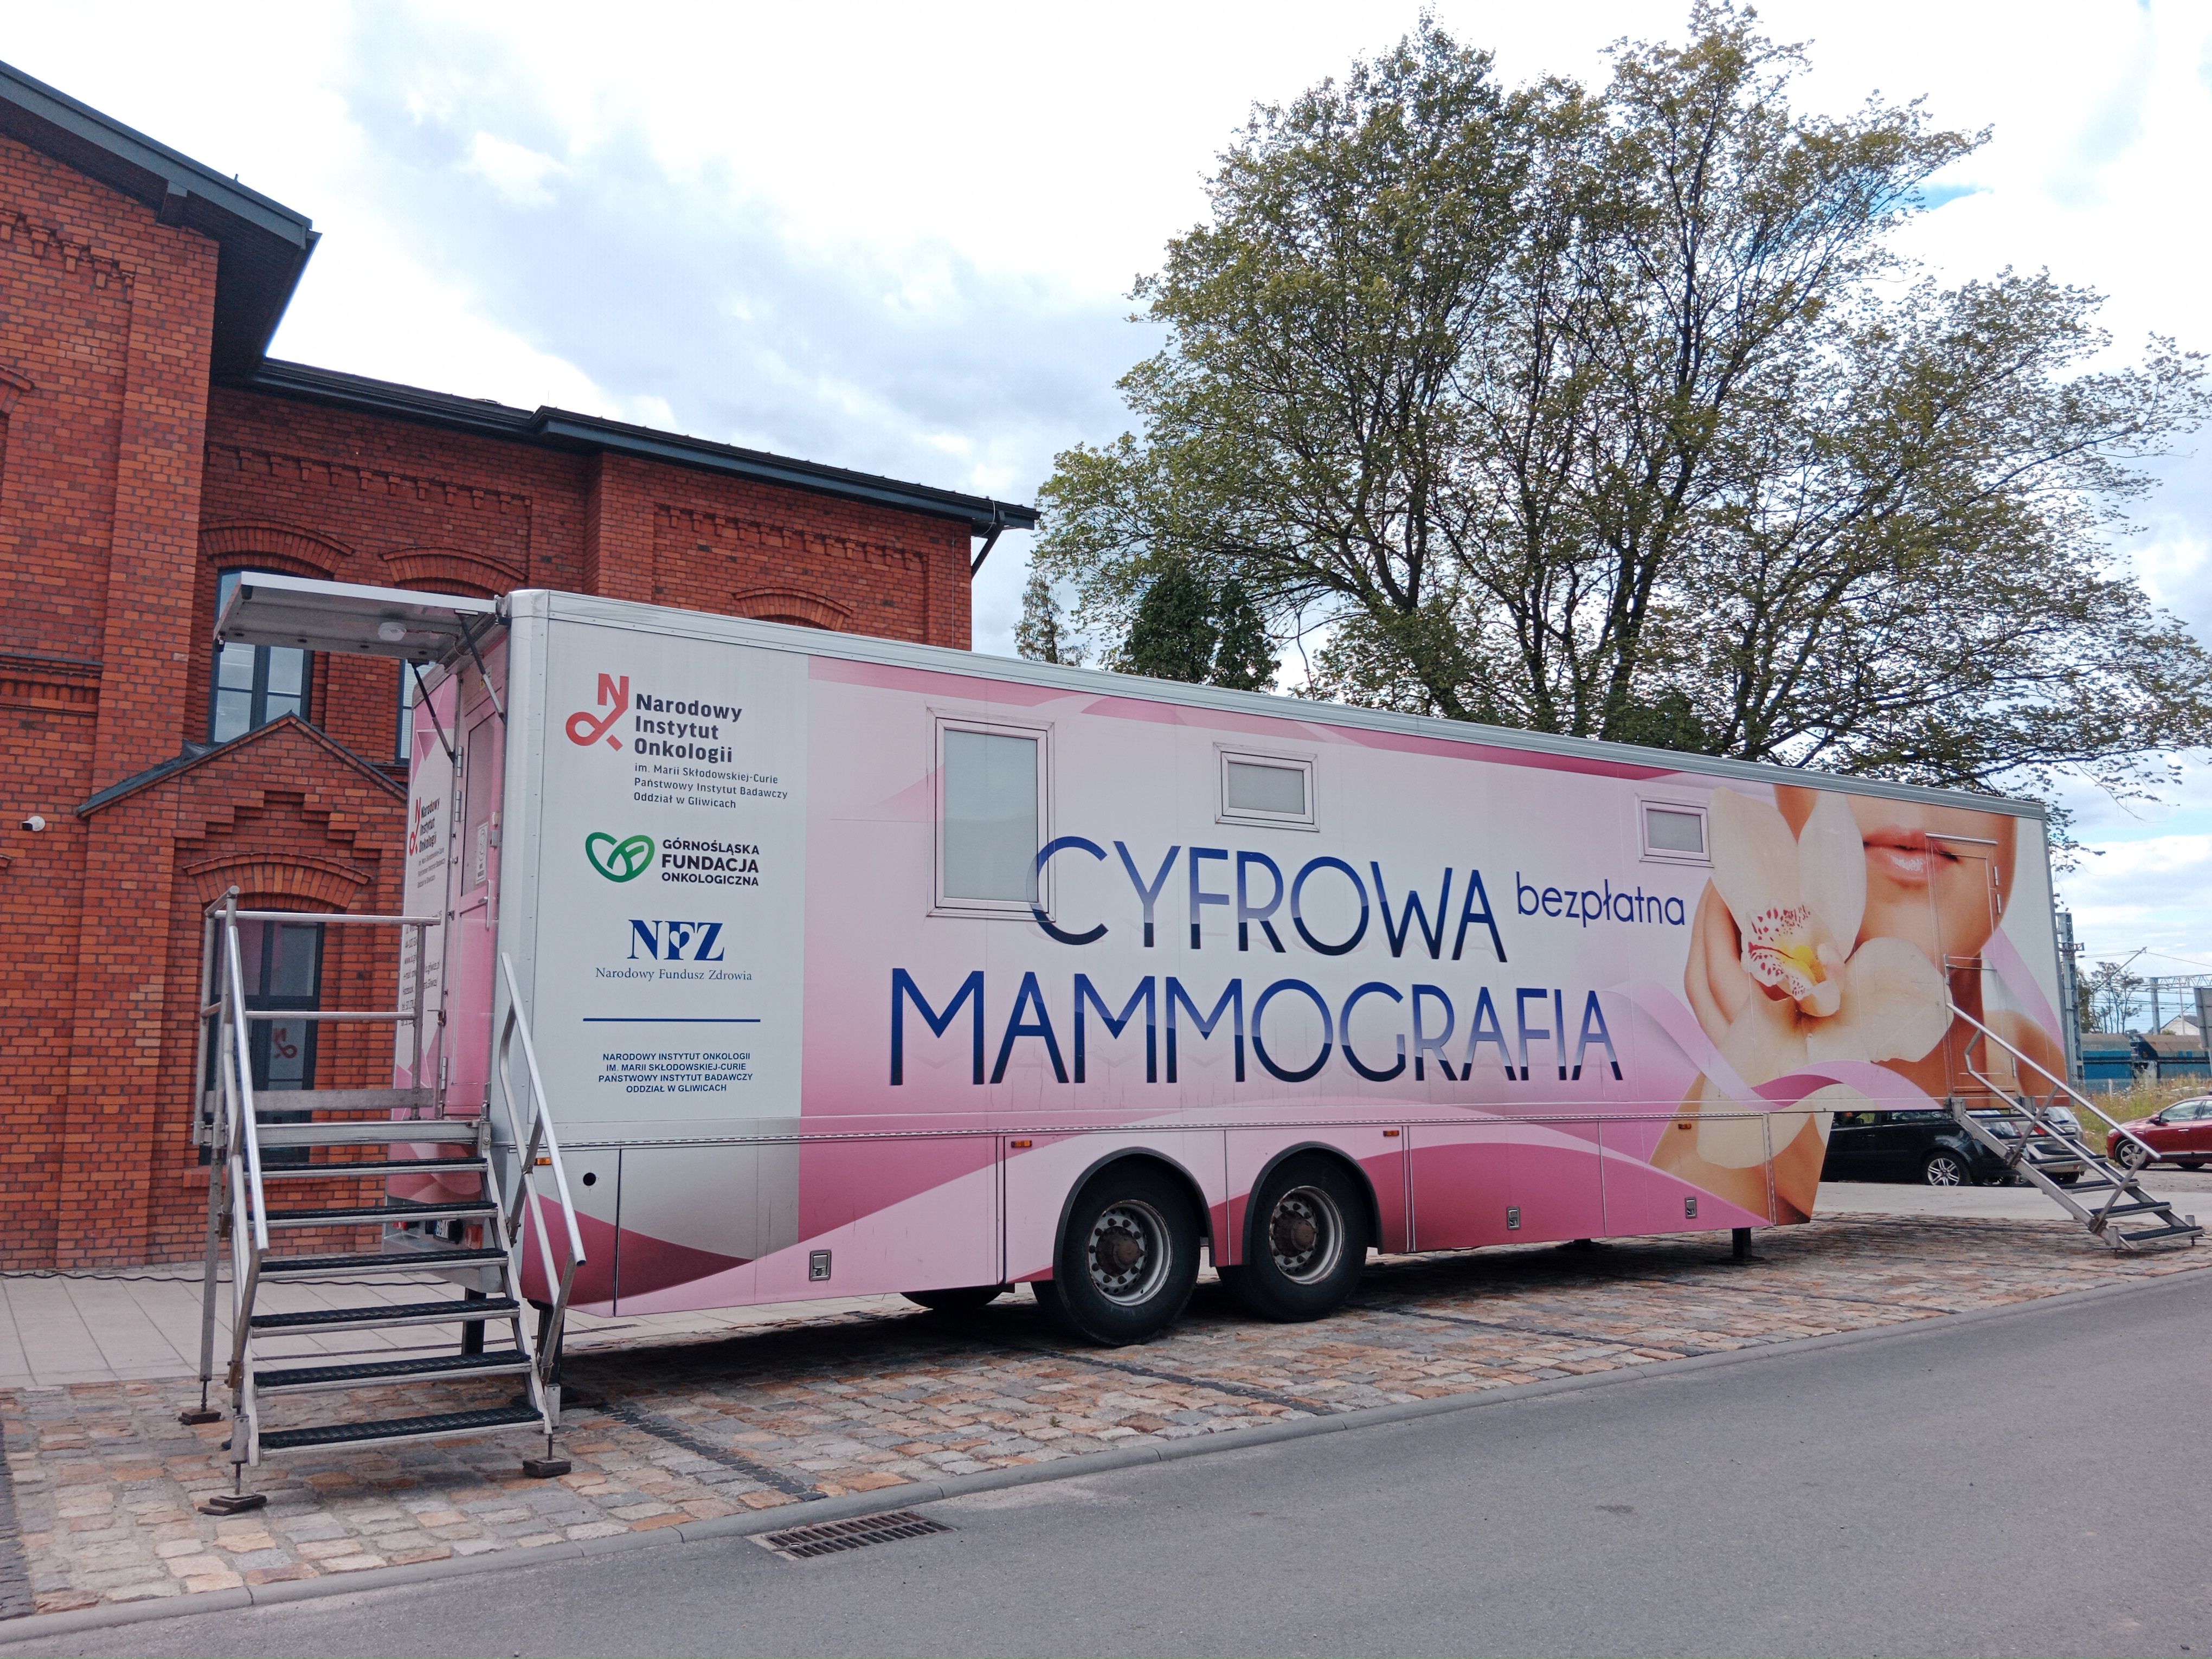 Zrób bezpłatnie mammografię 